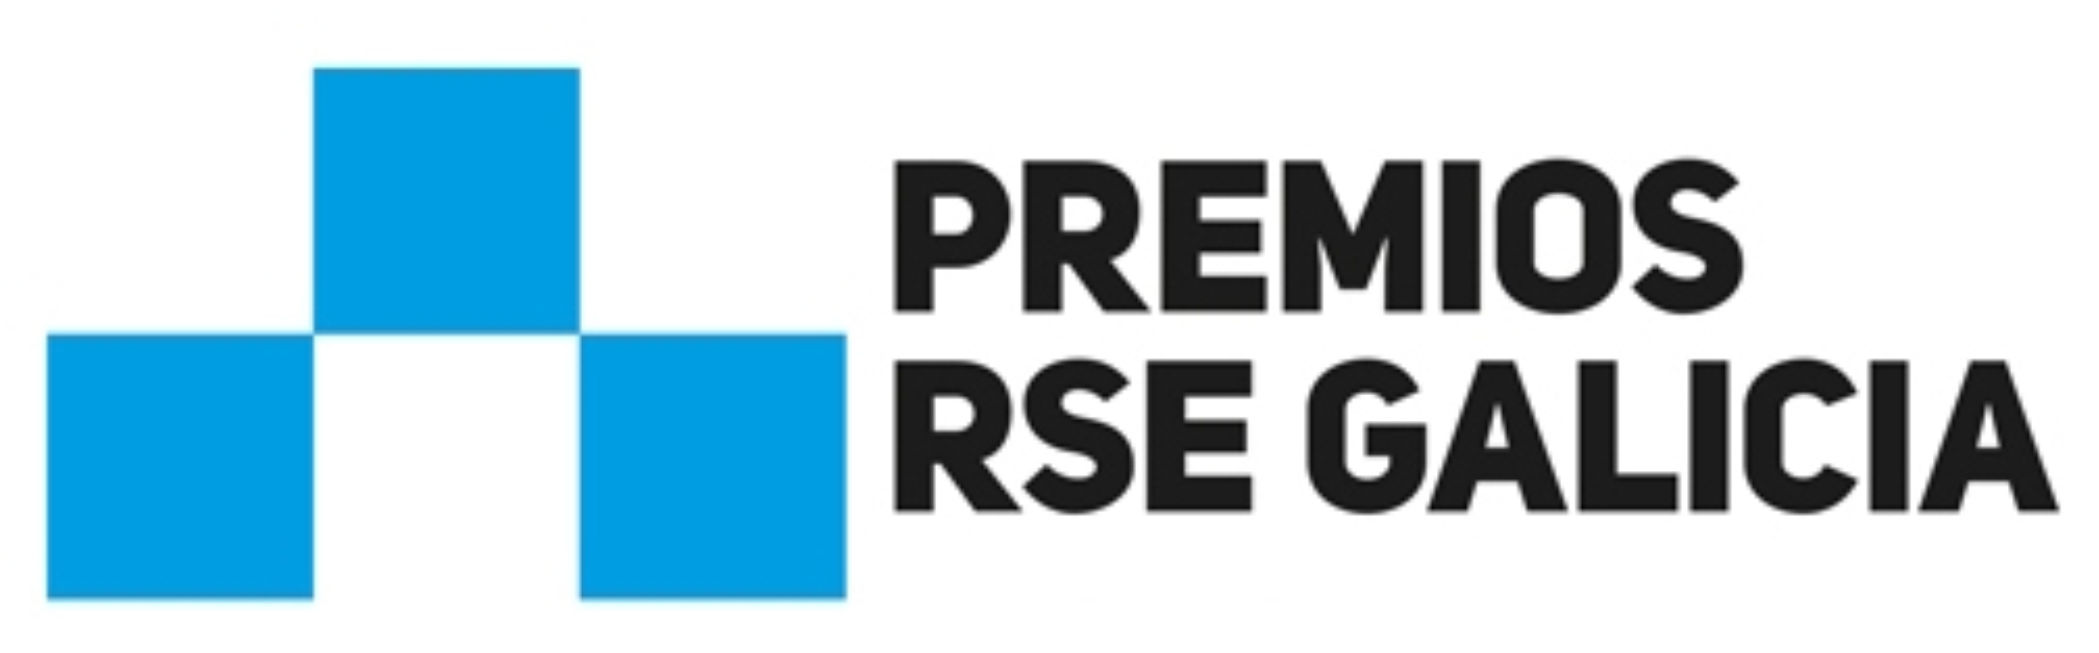 Premios RSE Galicia 2019